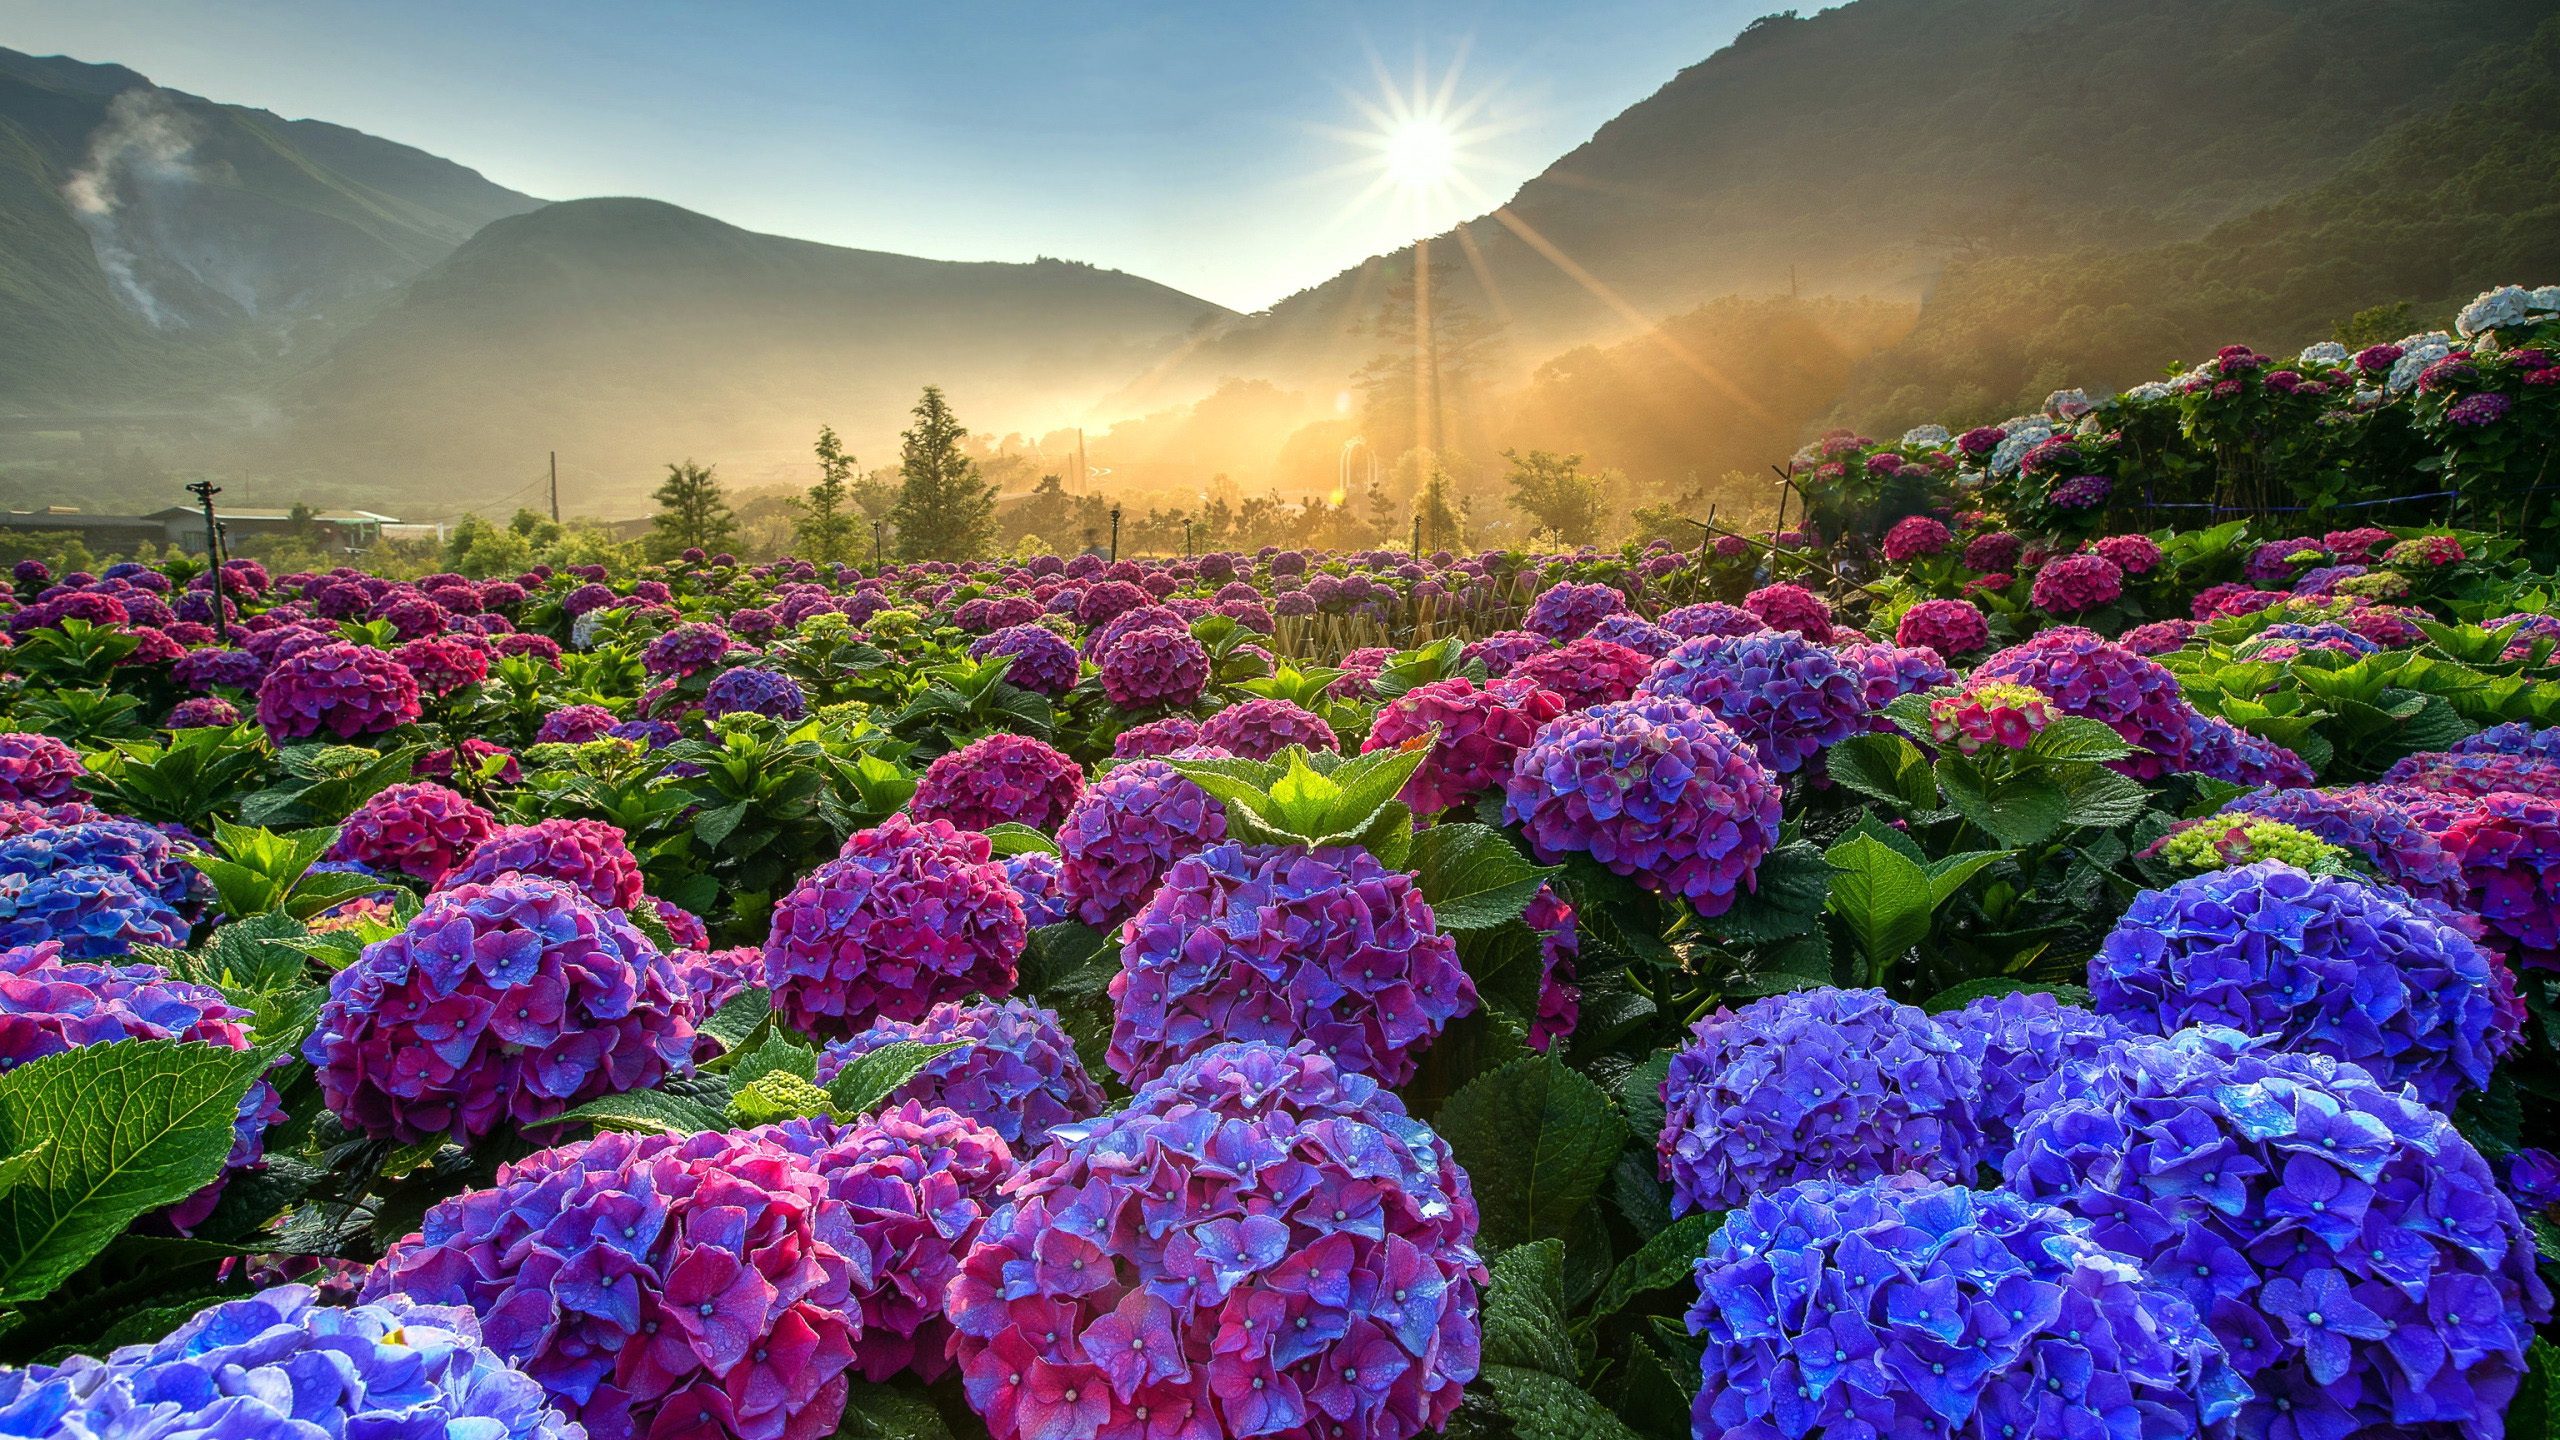 Cẩm tú cầu đẹp lung linh với những đóa hoa màu sắc nổi bật, tạo cảm giác thư thái cho tâm trí bạn. Xem hình để ngắm nhìn sự tuyệt diệu của loài hoa này nhé!